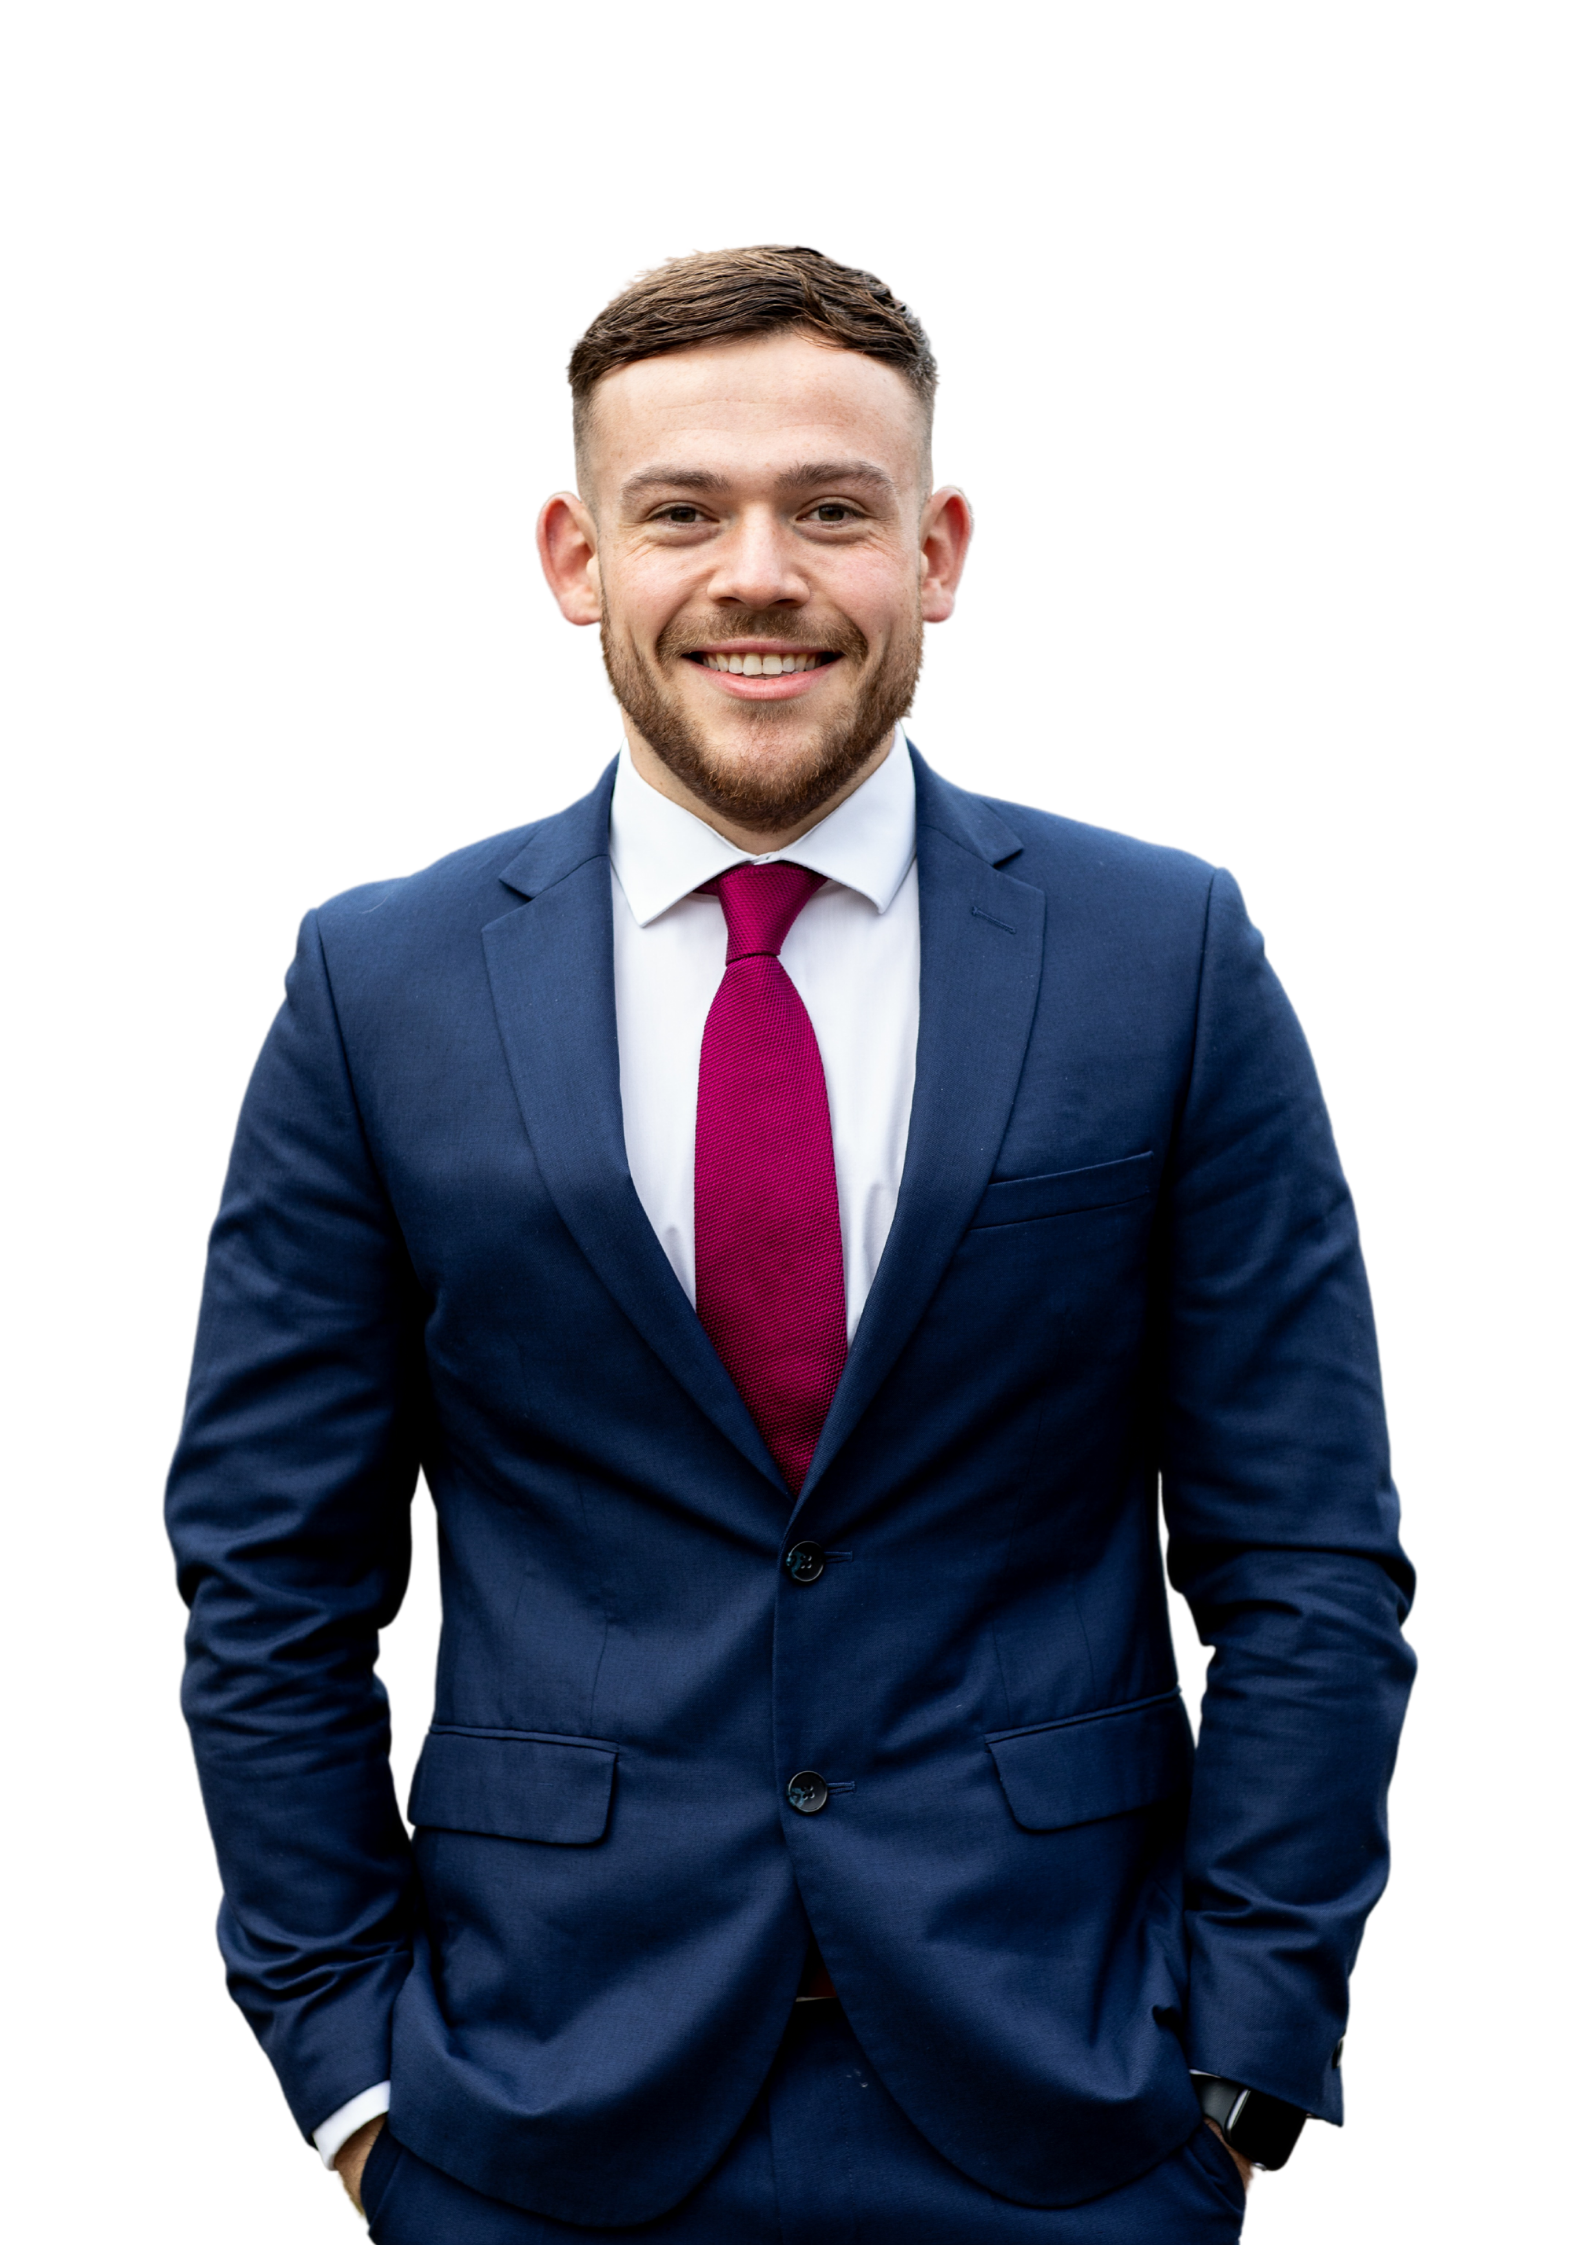 Sam Childerley in a suit, Aaron Wallis Sales Recruitment